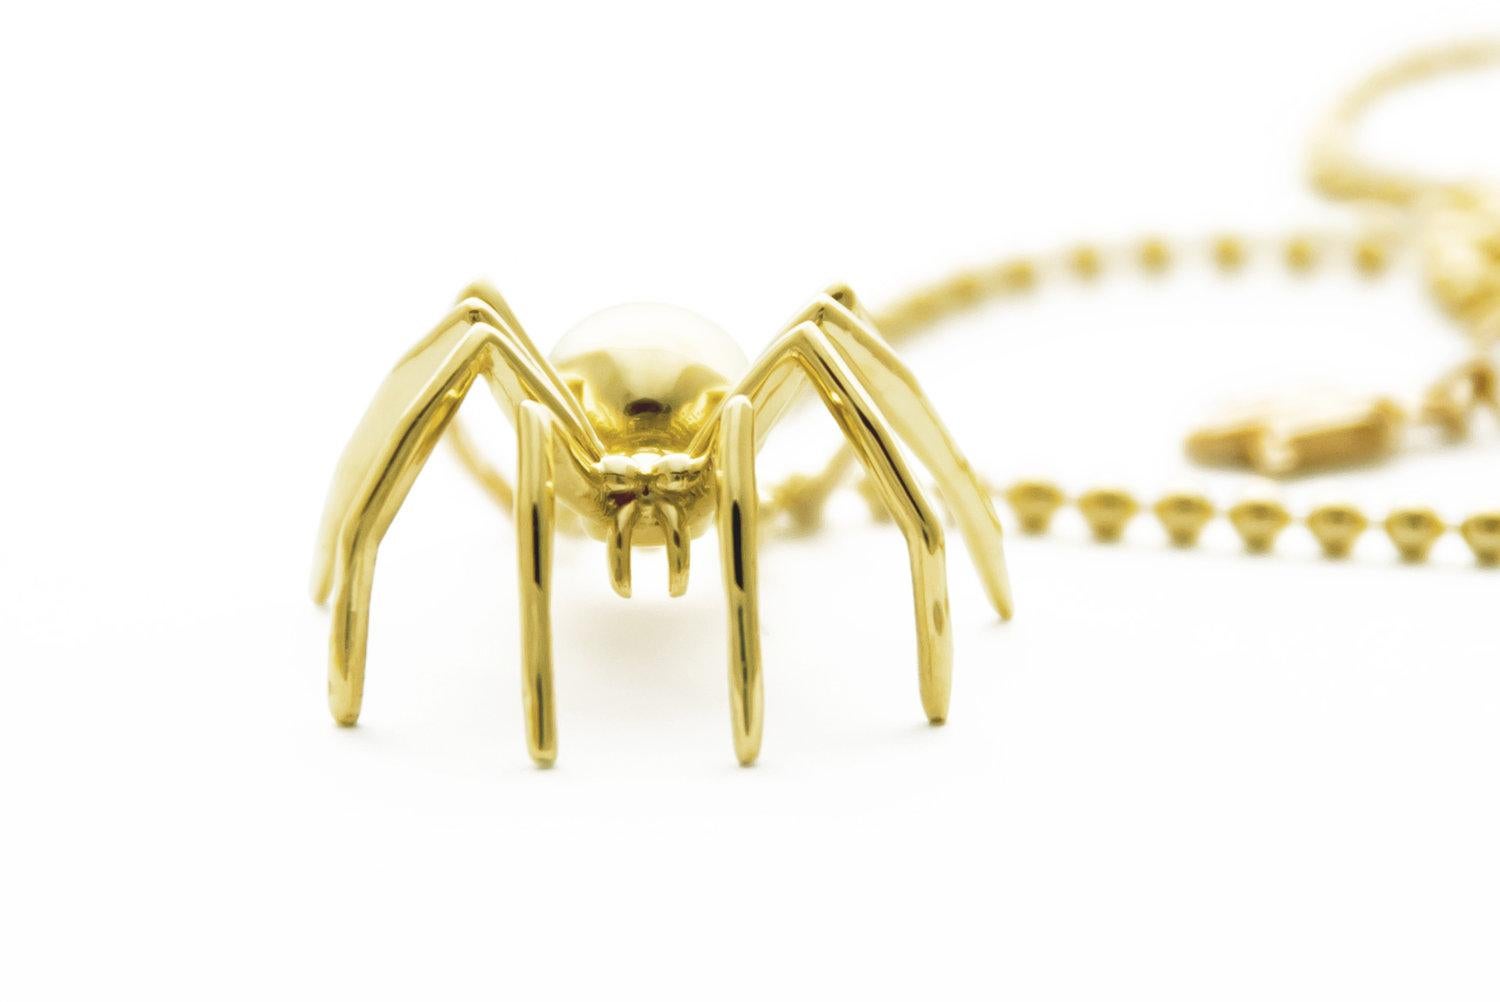 Nous vous présentons le grand pendentif araignée en or jaune massif, qui témoigne du profond symbolisme de la créativité et de l'autodétermination incarné par l'araignée. Réalisé avec la plus grande précision et le plus grand talent artistique, ce